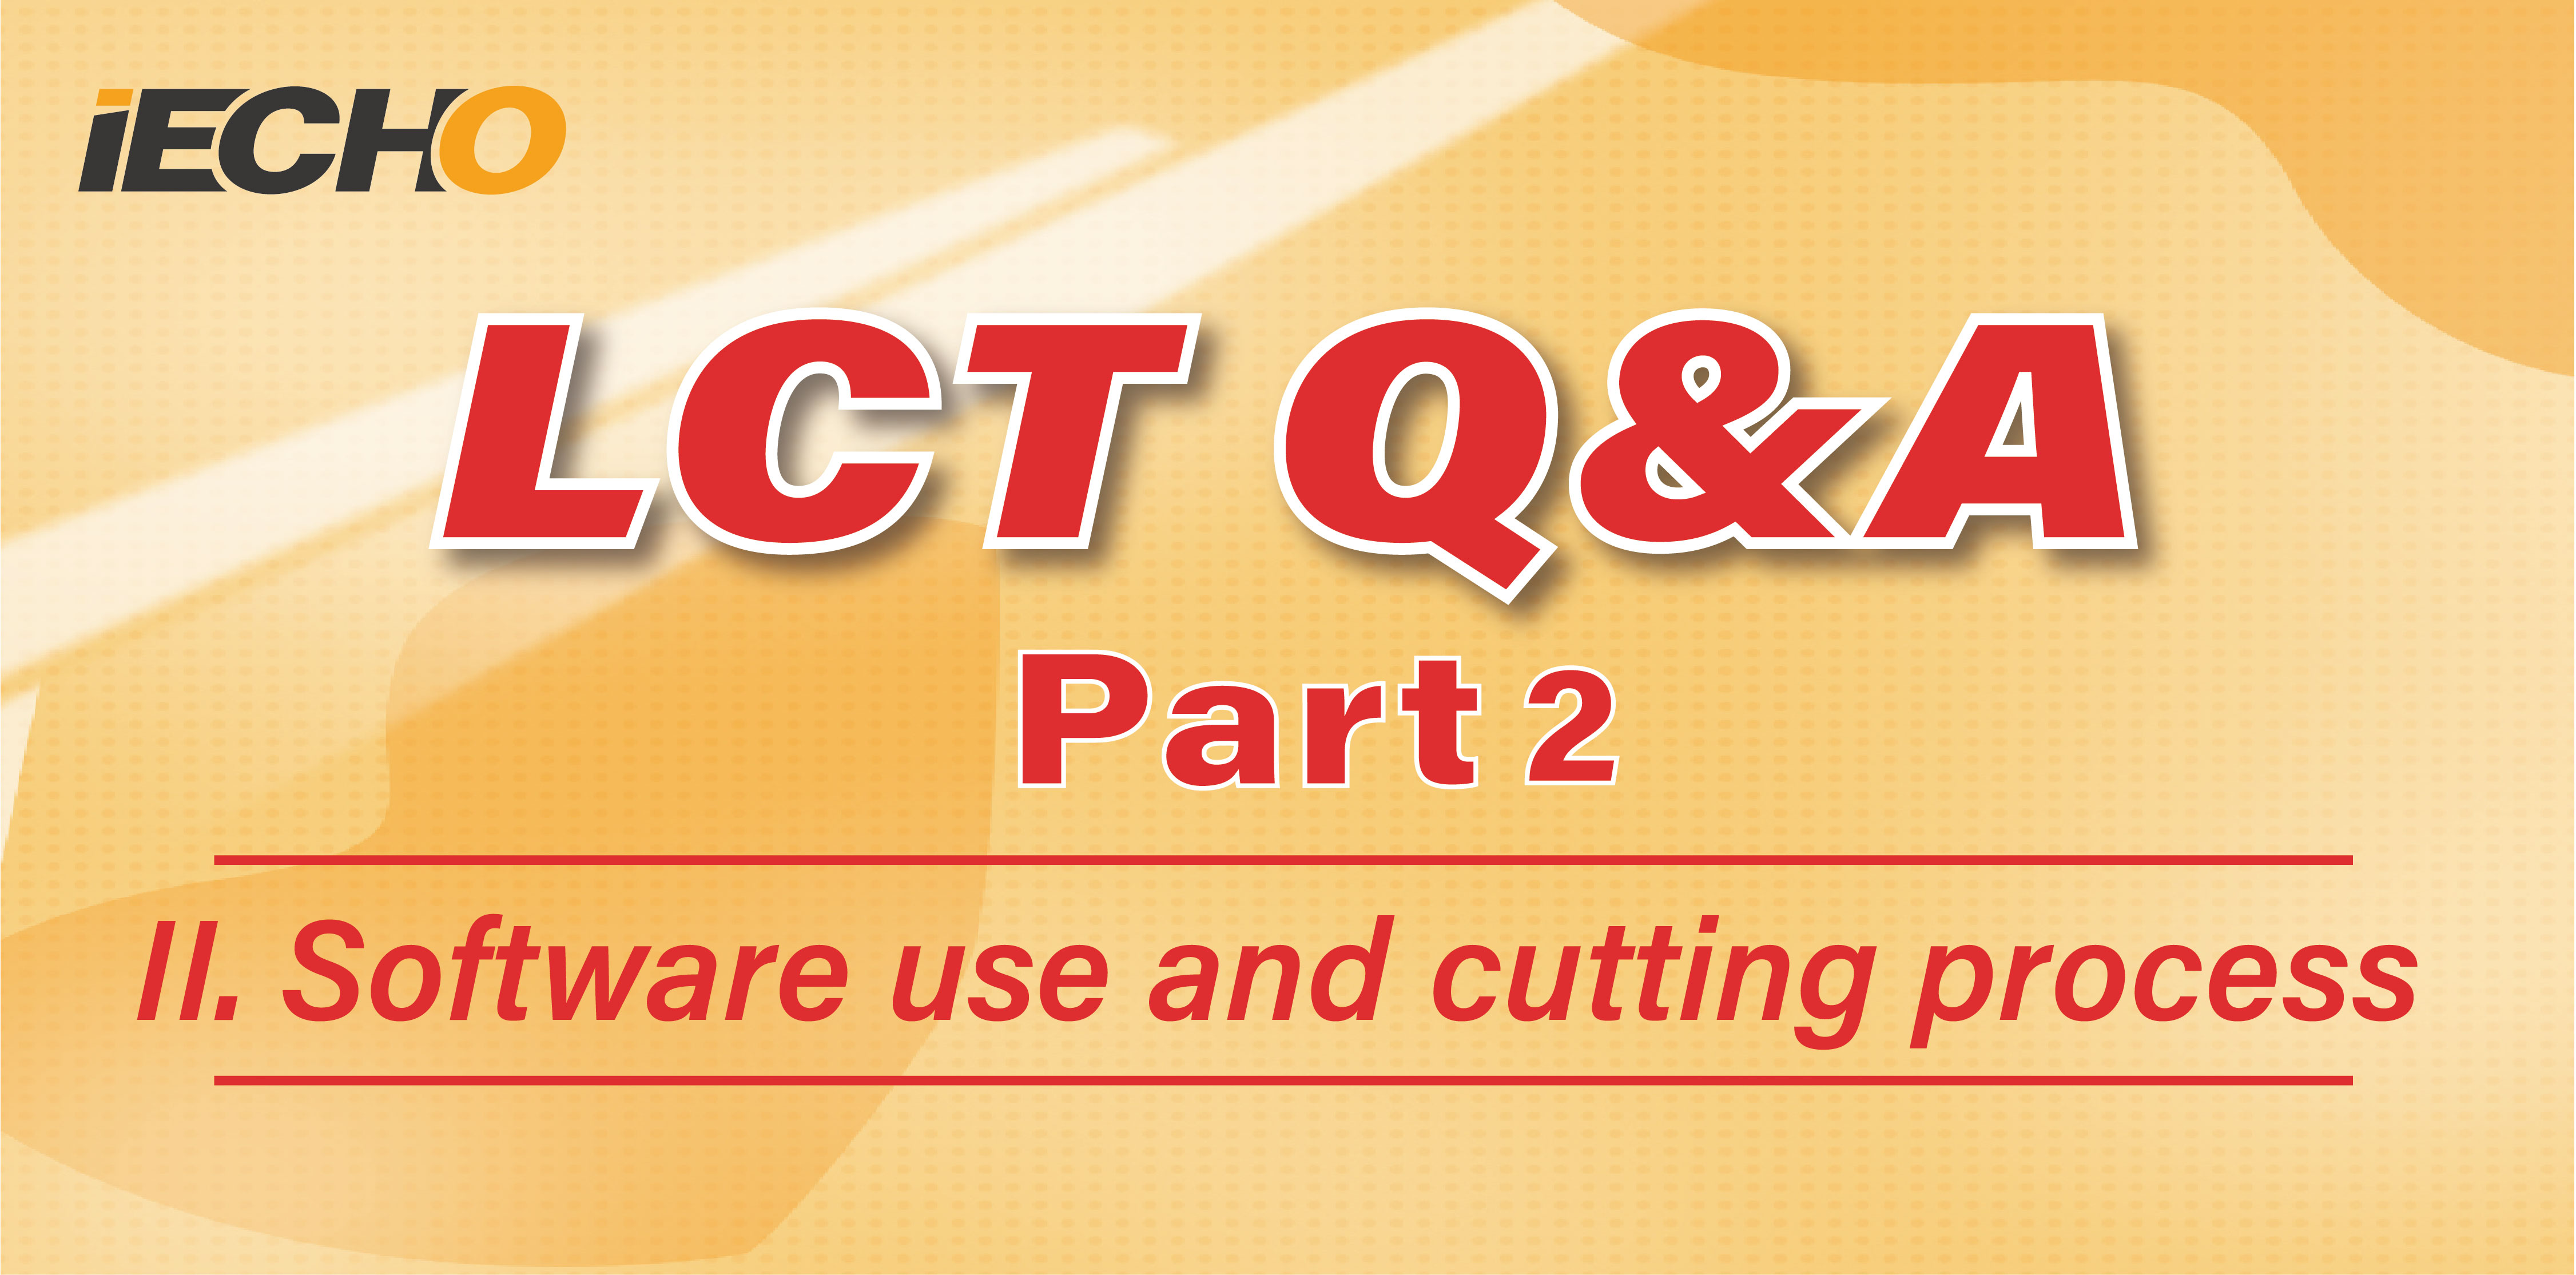 LCT Q&A Part2——Pamakéan parangkat lunak sareng prosés motong